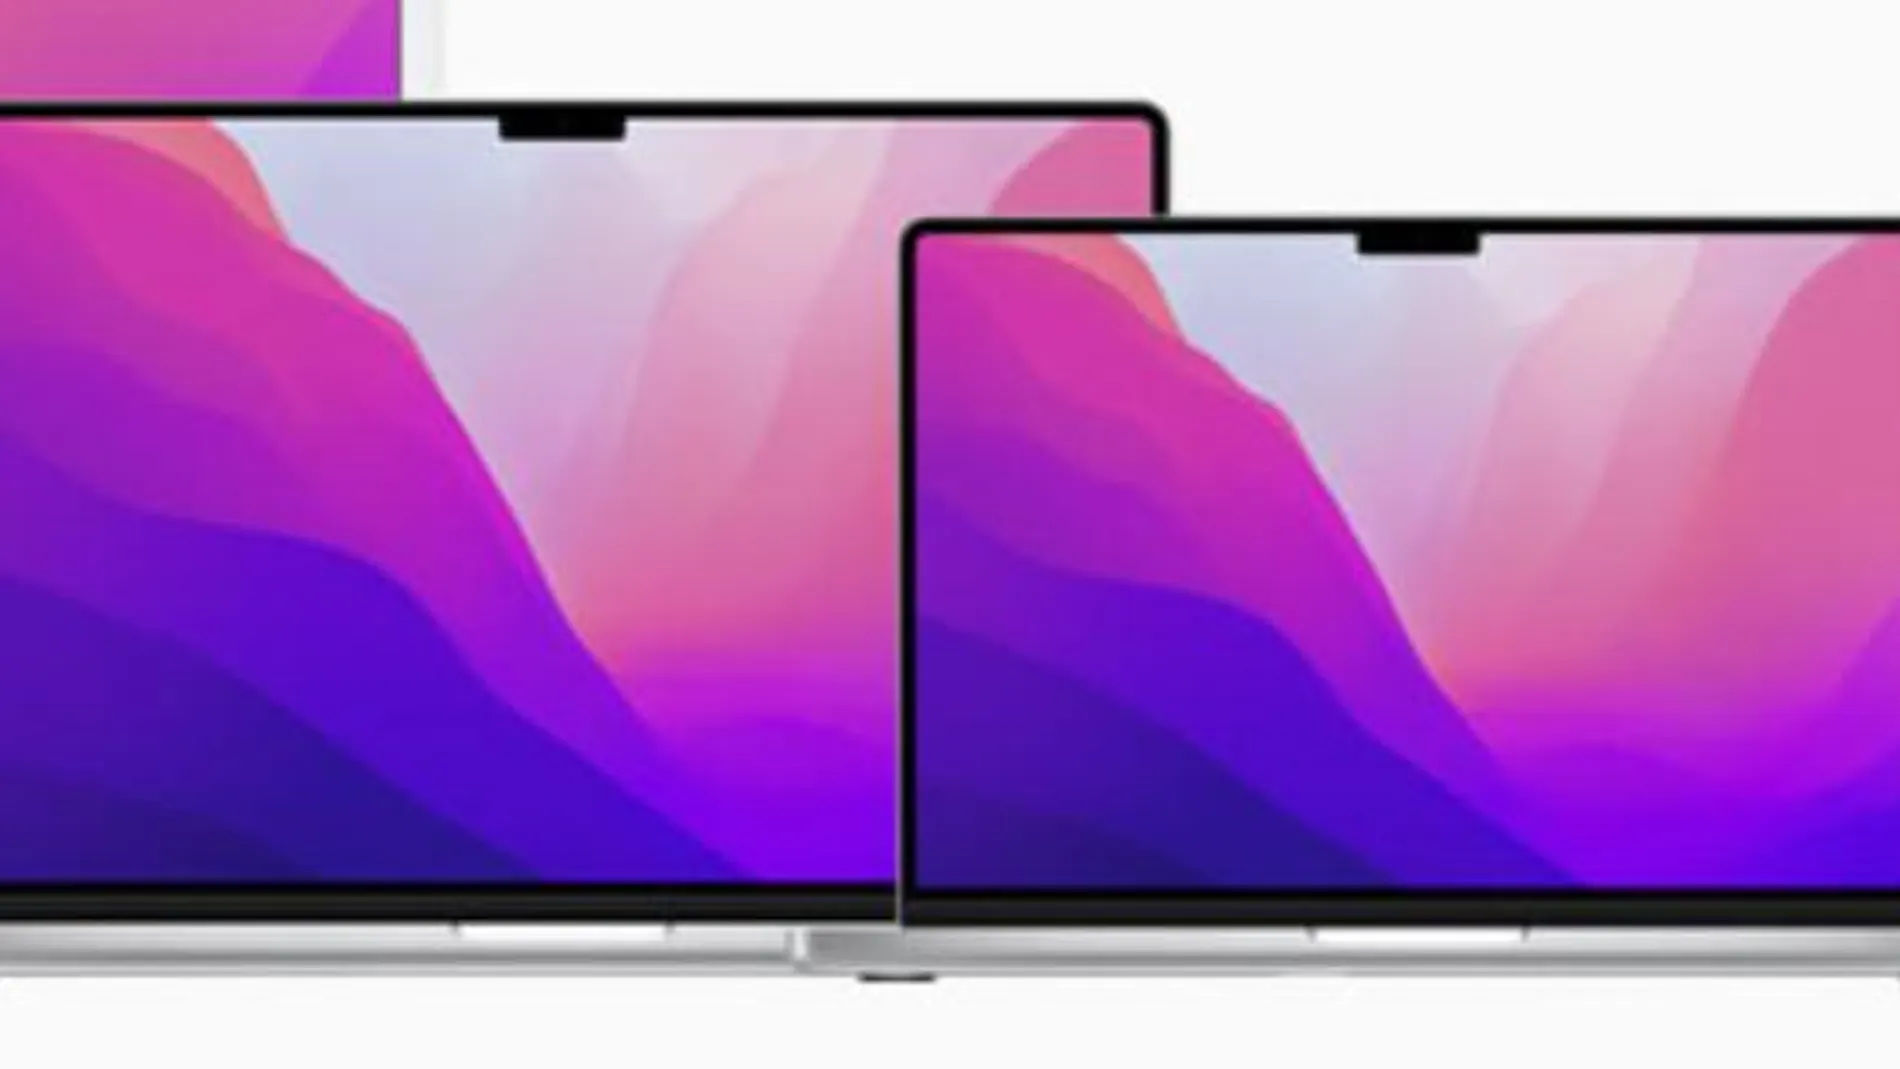 Los nuevos MacBook Pro de 14 y 16 pulgadas con "notch" en pantalla.